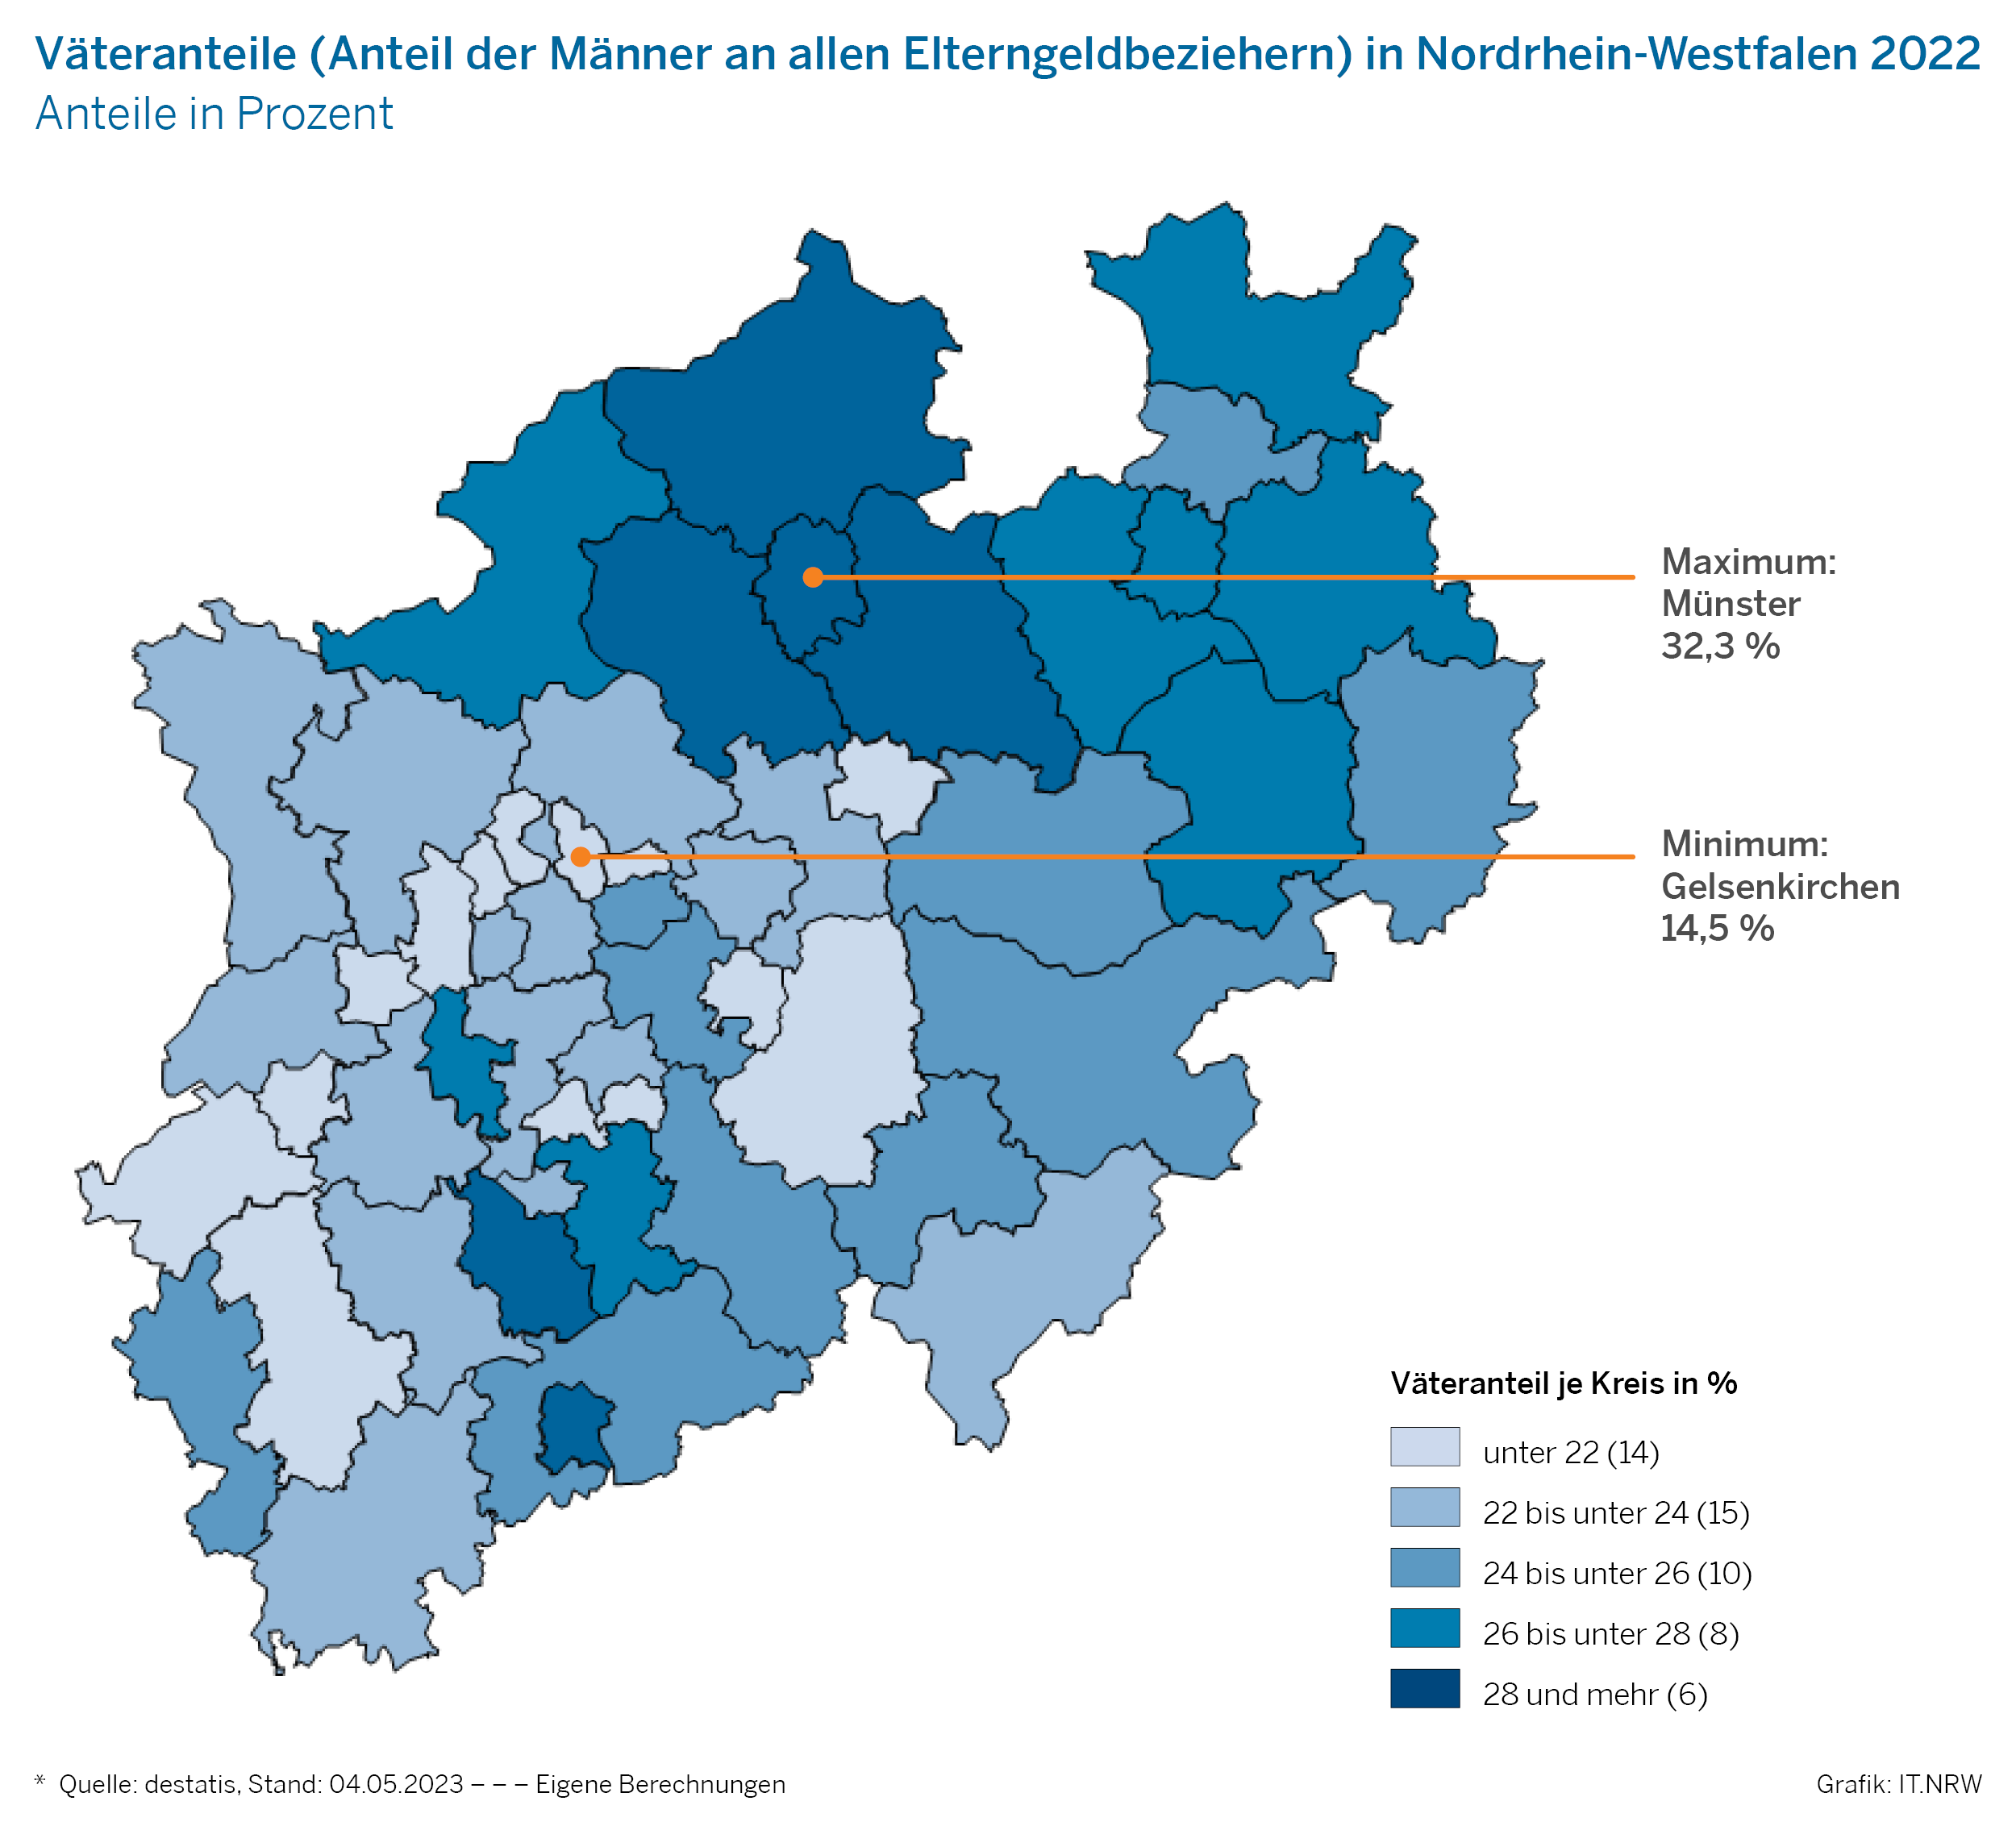 Väteranteile (Anteil der Männer an allen Elterngeldbeziehern) in Nordrhein-Westfalen 2022